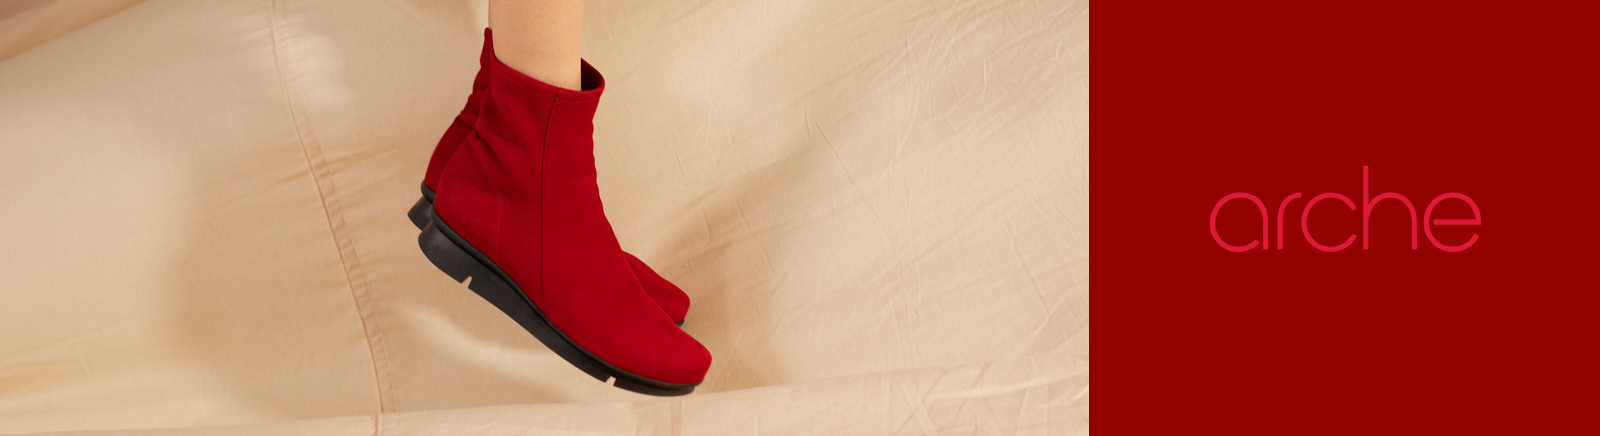 Arche Schuhe für Damen jetzt online bestellen im Juppen Shop